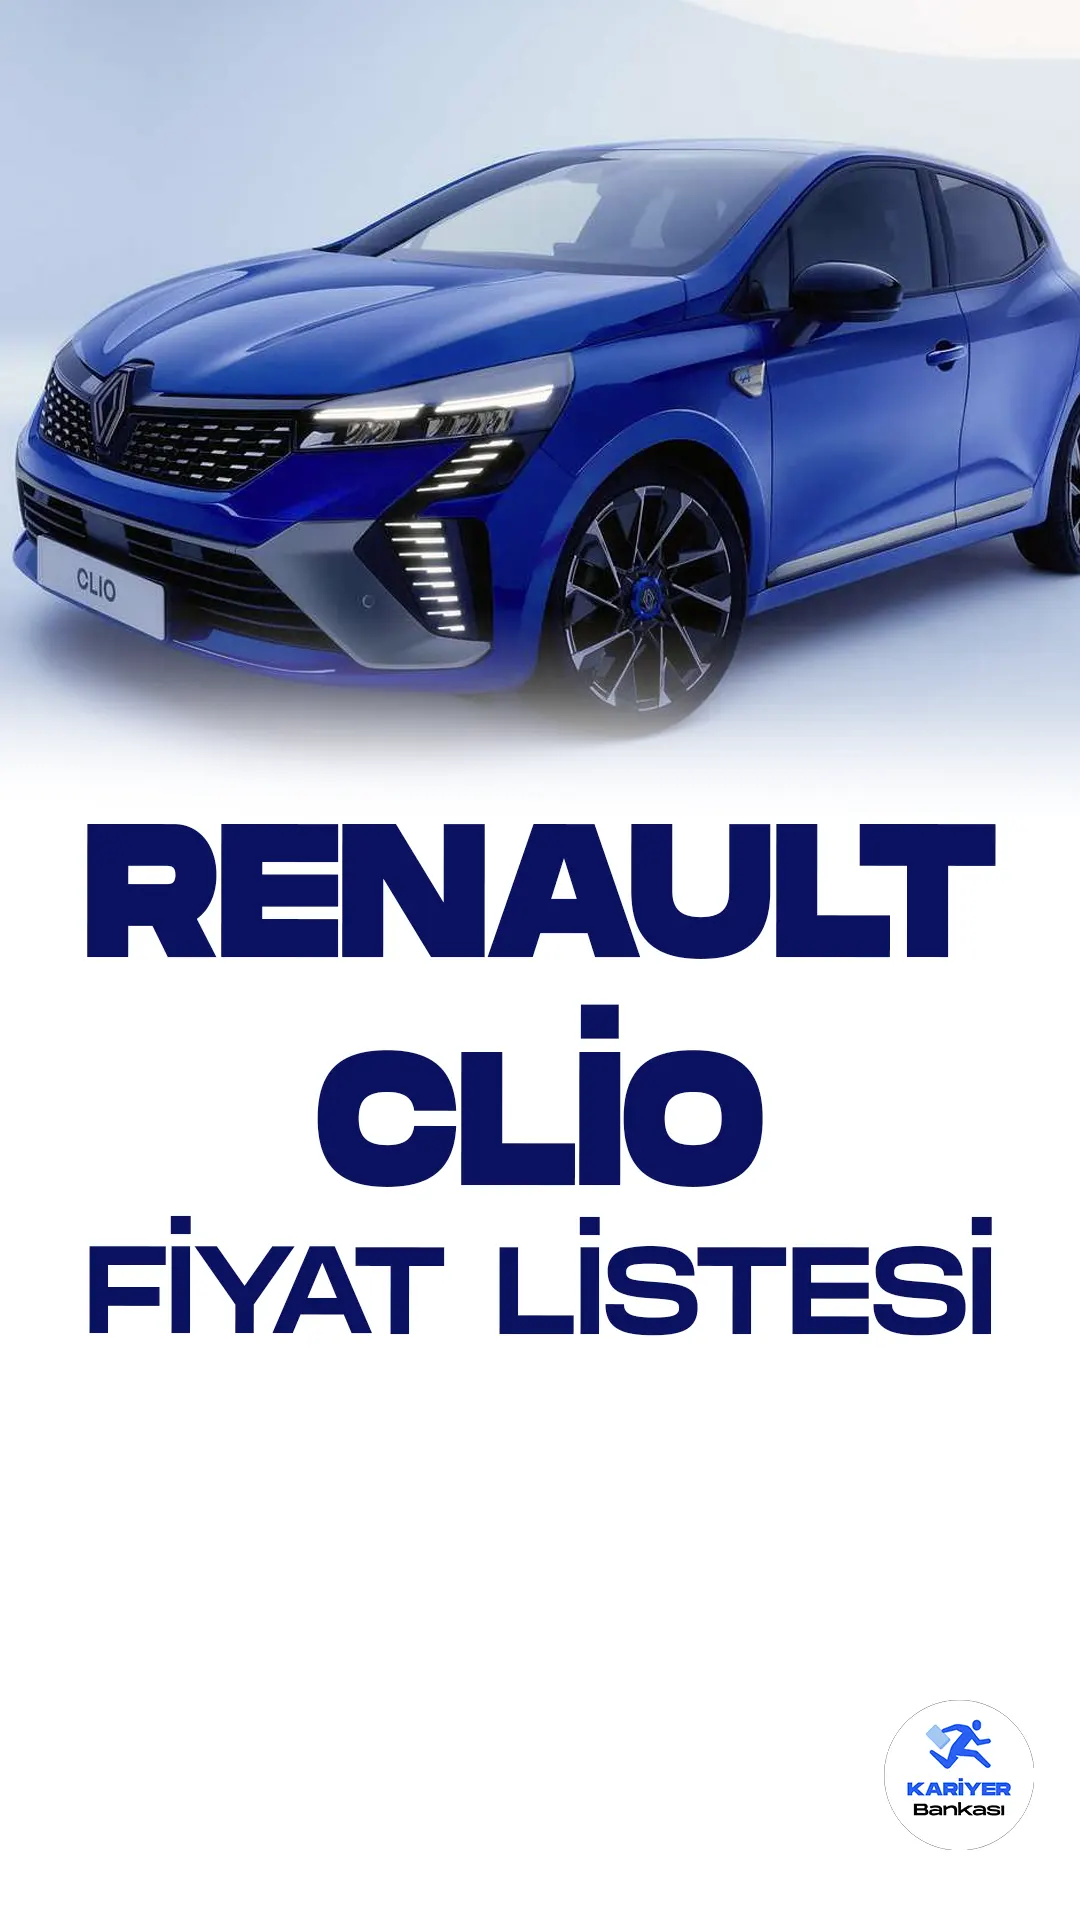 Renault Clio Mayıs 2023 Fiyat Listesi Yayımlandı. Popüler araç markalarından olan Renault, Türkiye'de en çok satan araç markaları arasında ilk sıralarda yer alıyor. Yeni nesil Renault Clio, kompakt sınıftaki otomobil tutkunlarını heyecanlandırmaya devam ediyor.